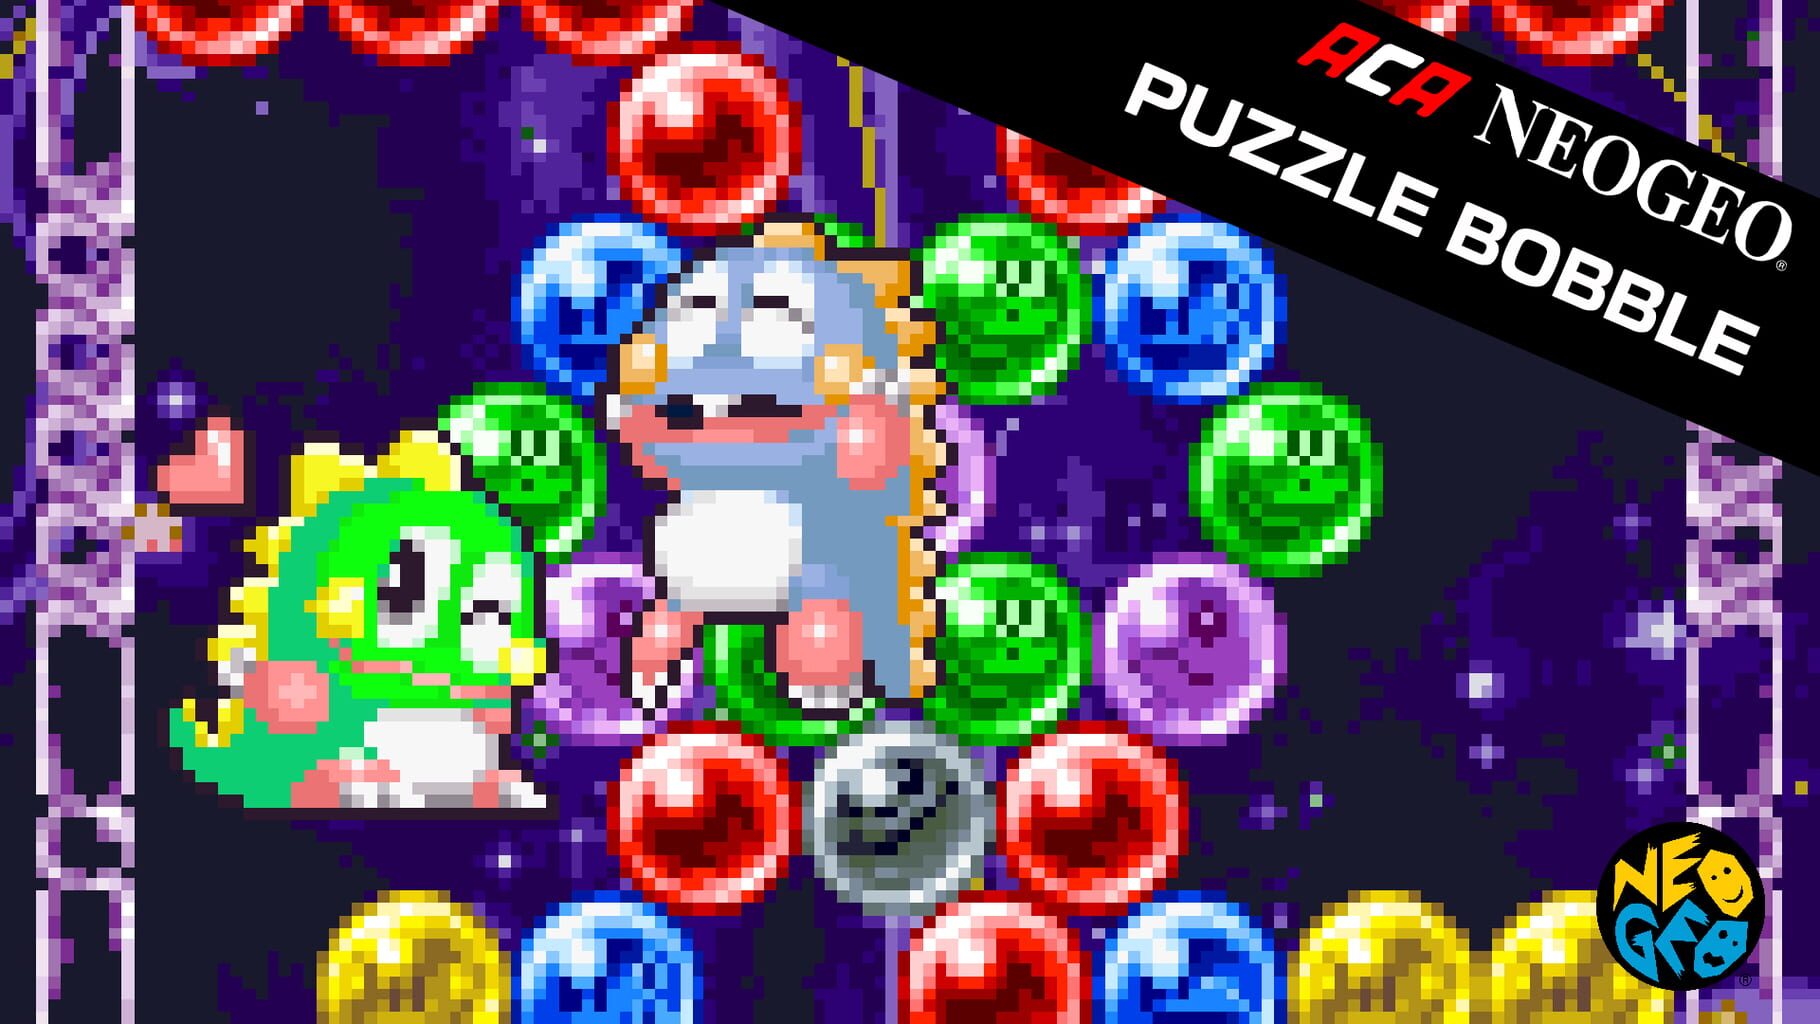 ACA Neo Geo: Puzzle Bobble artwork